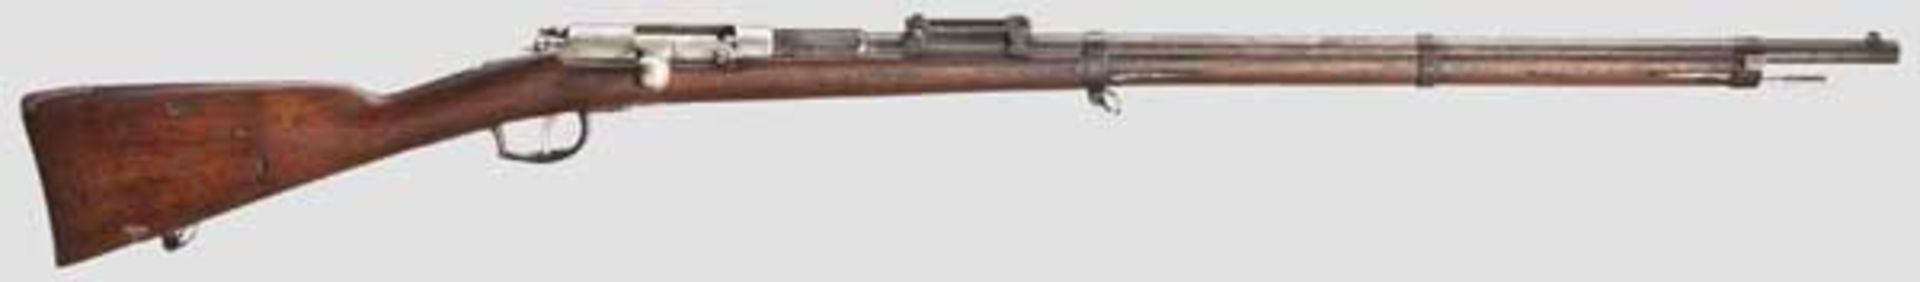 Fremdes Gewehr in deutschen Diensten: Holländ. Gewehr Beaumont M 1871, aptiert Kal. 11 mm, Nr. 24.